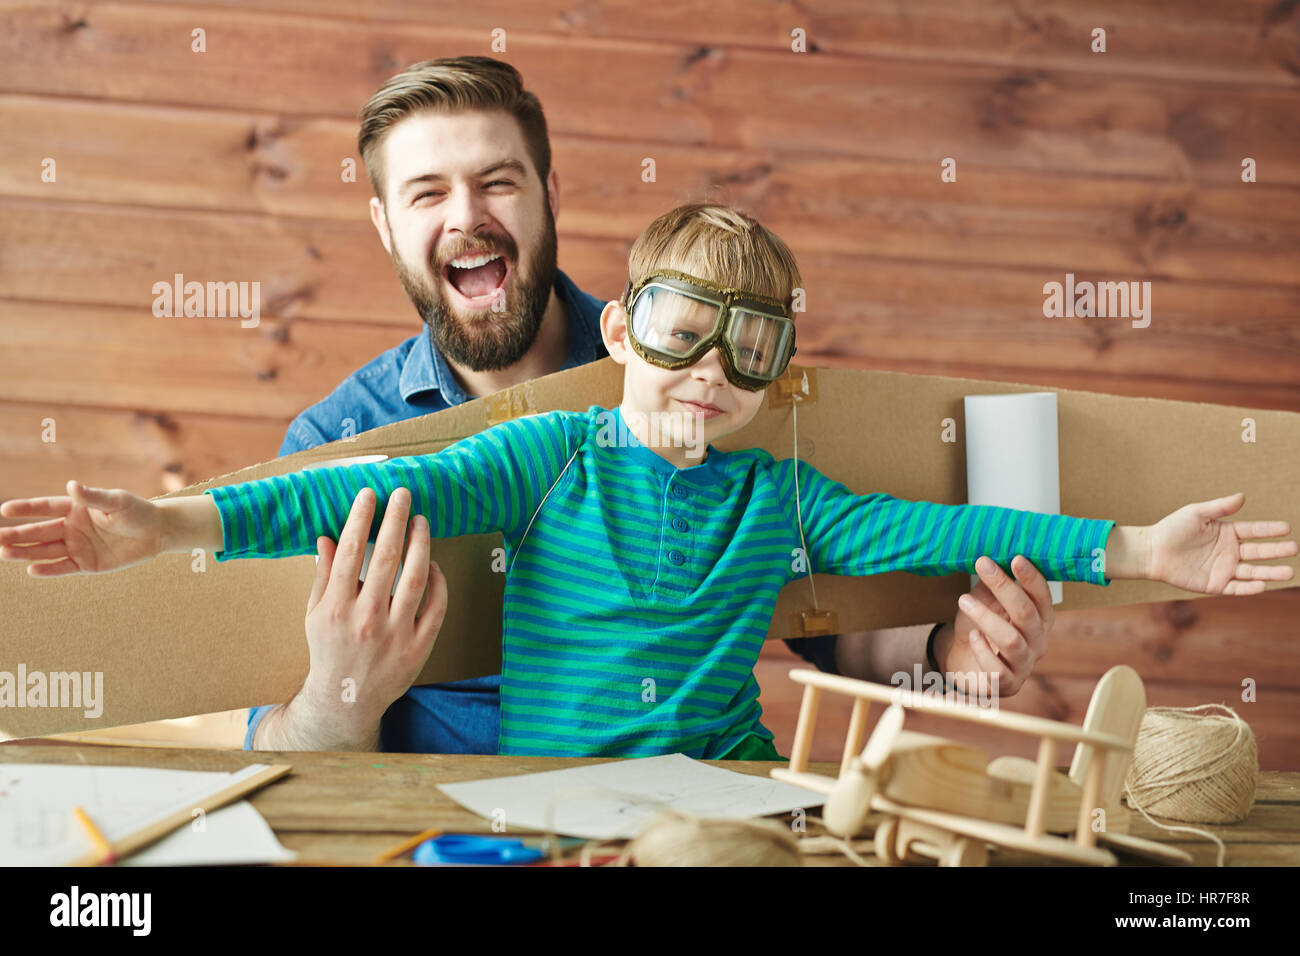 Portrait drôle de père barbu et petit fils de lunettes aviator et carton avec des ailes d'avion derrière son dos jouer ensemble Banque D'Images